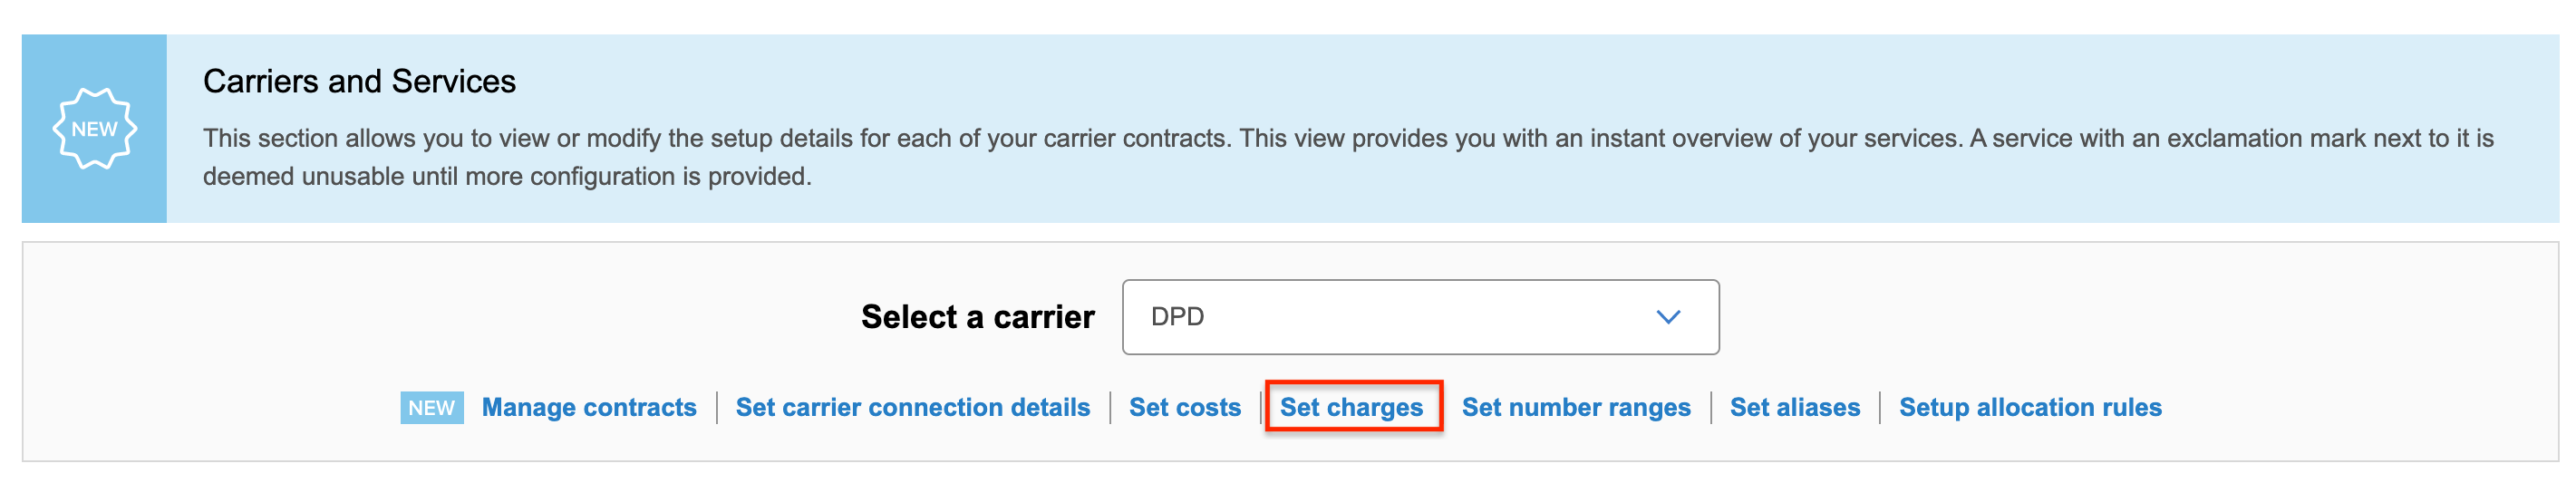 dm_carrier_setup_set_charges.png